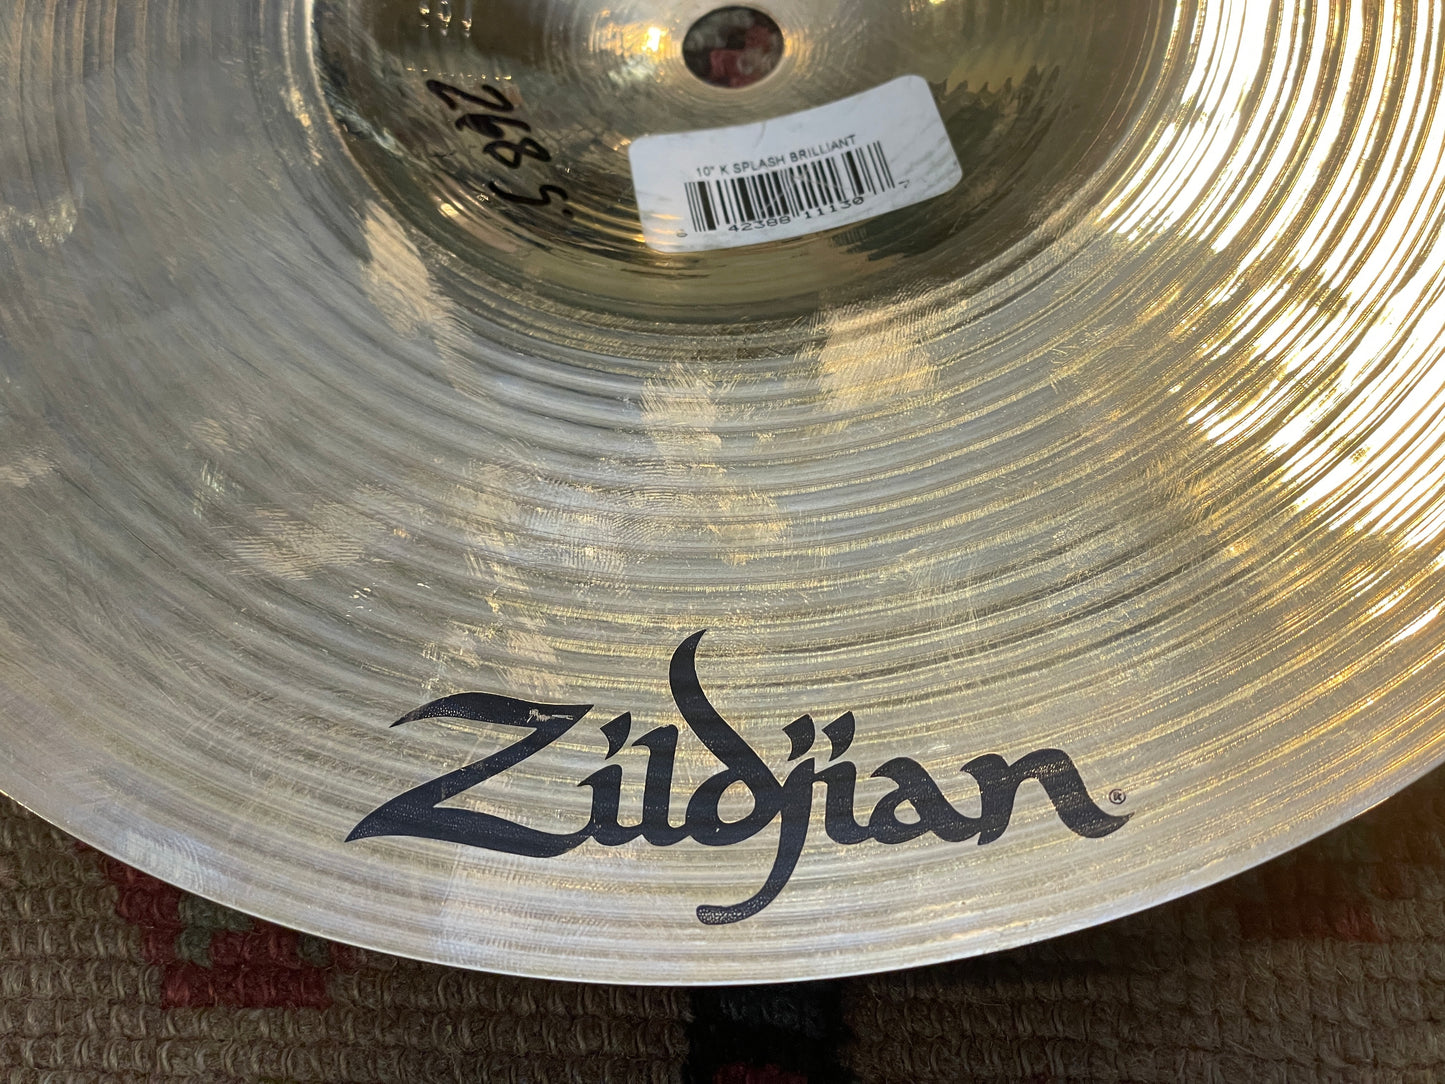 10" Zildjian K Splash Brilliant 268g